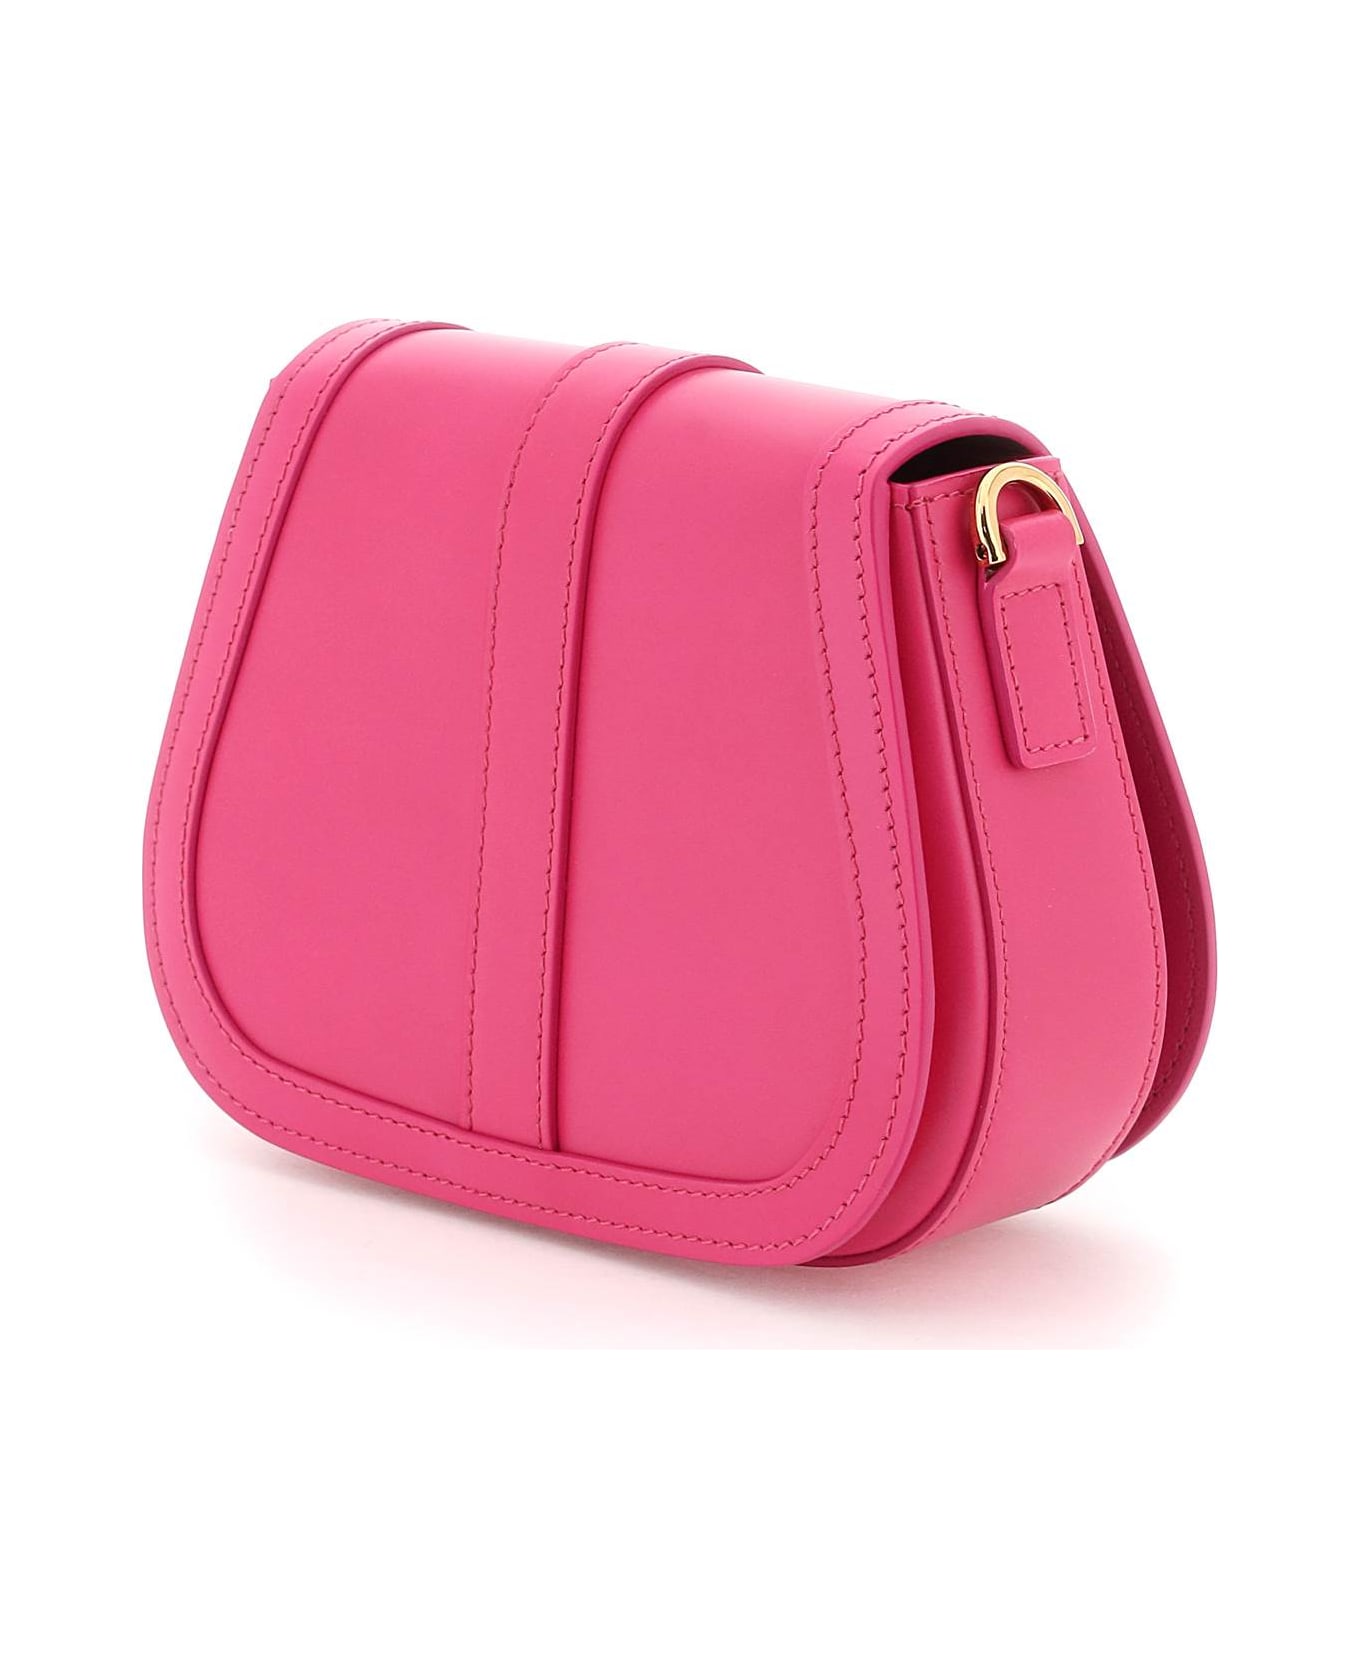 Versace Greca Goddess Leather Shoulder Bag - Pink トートバッグ